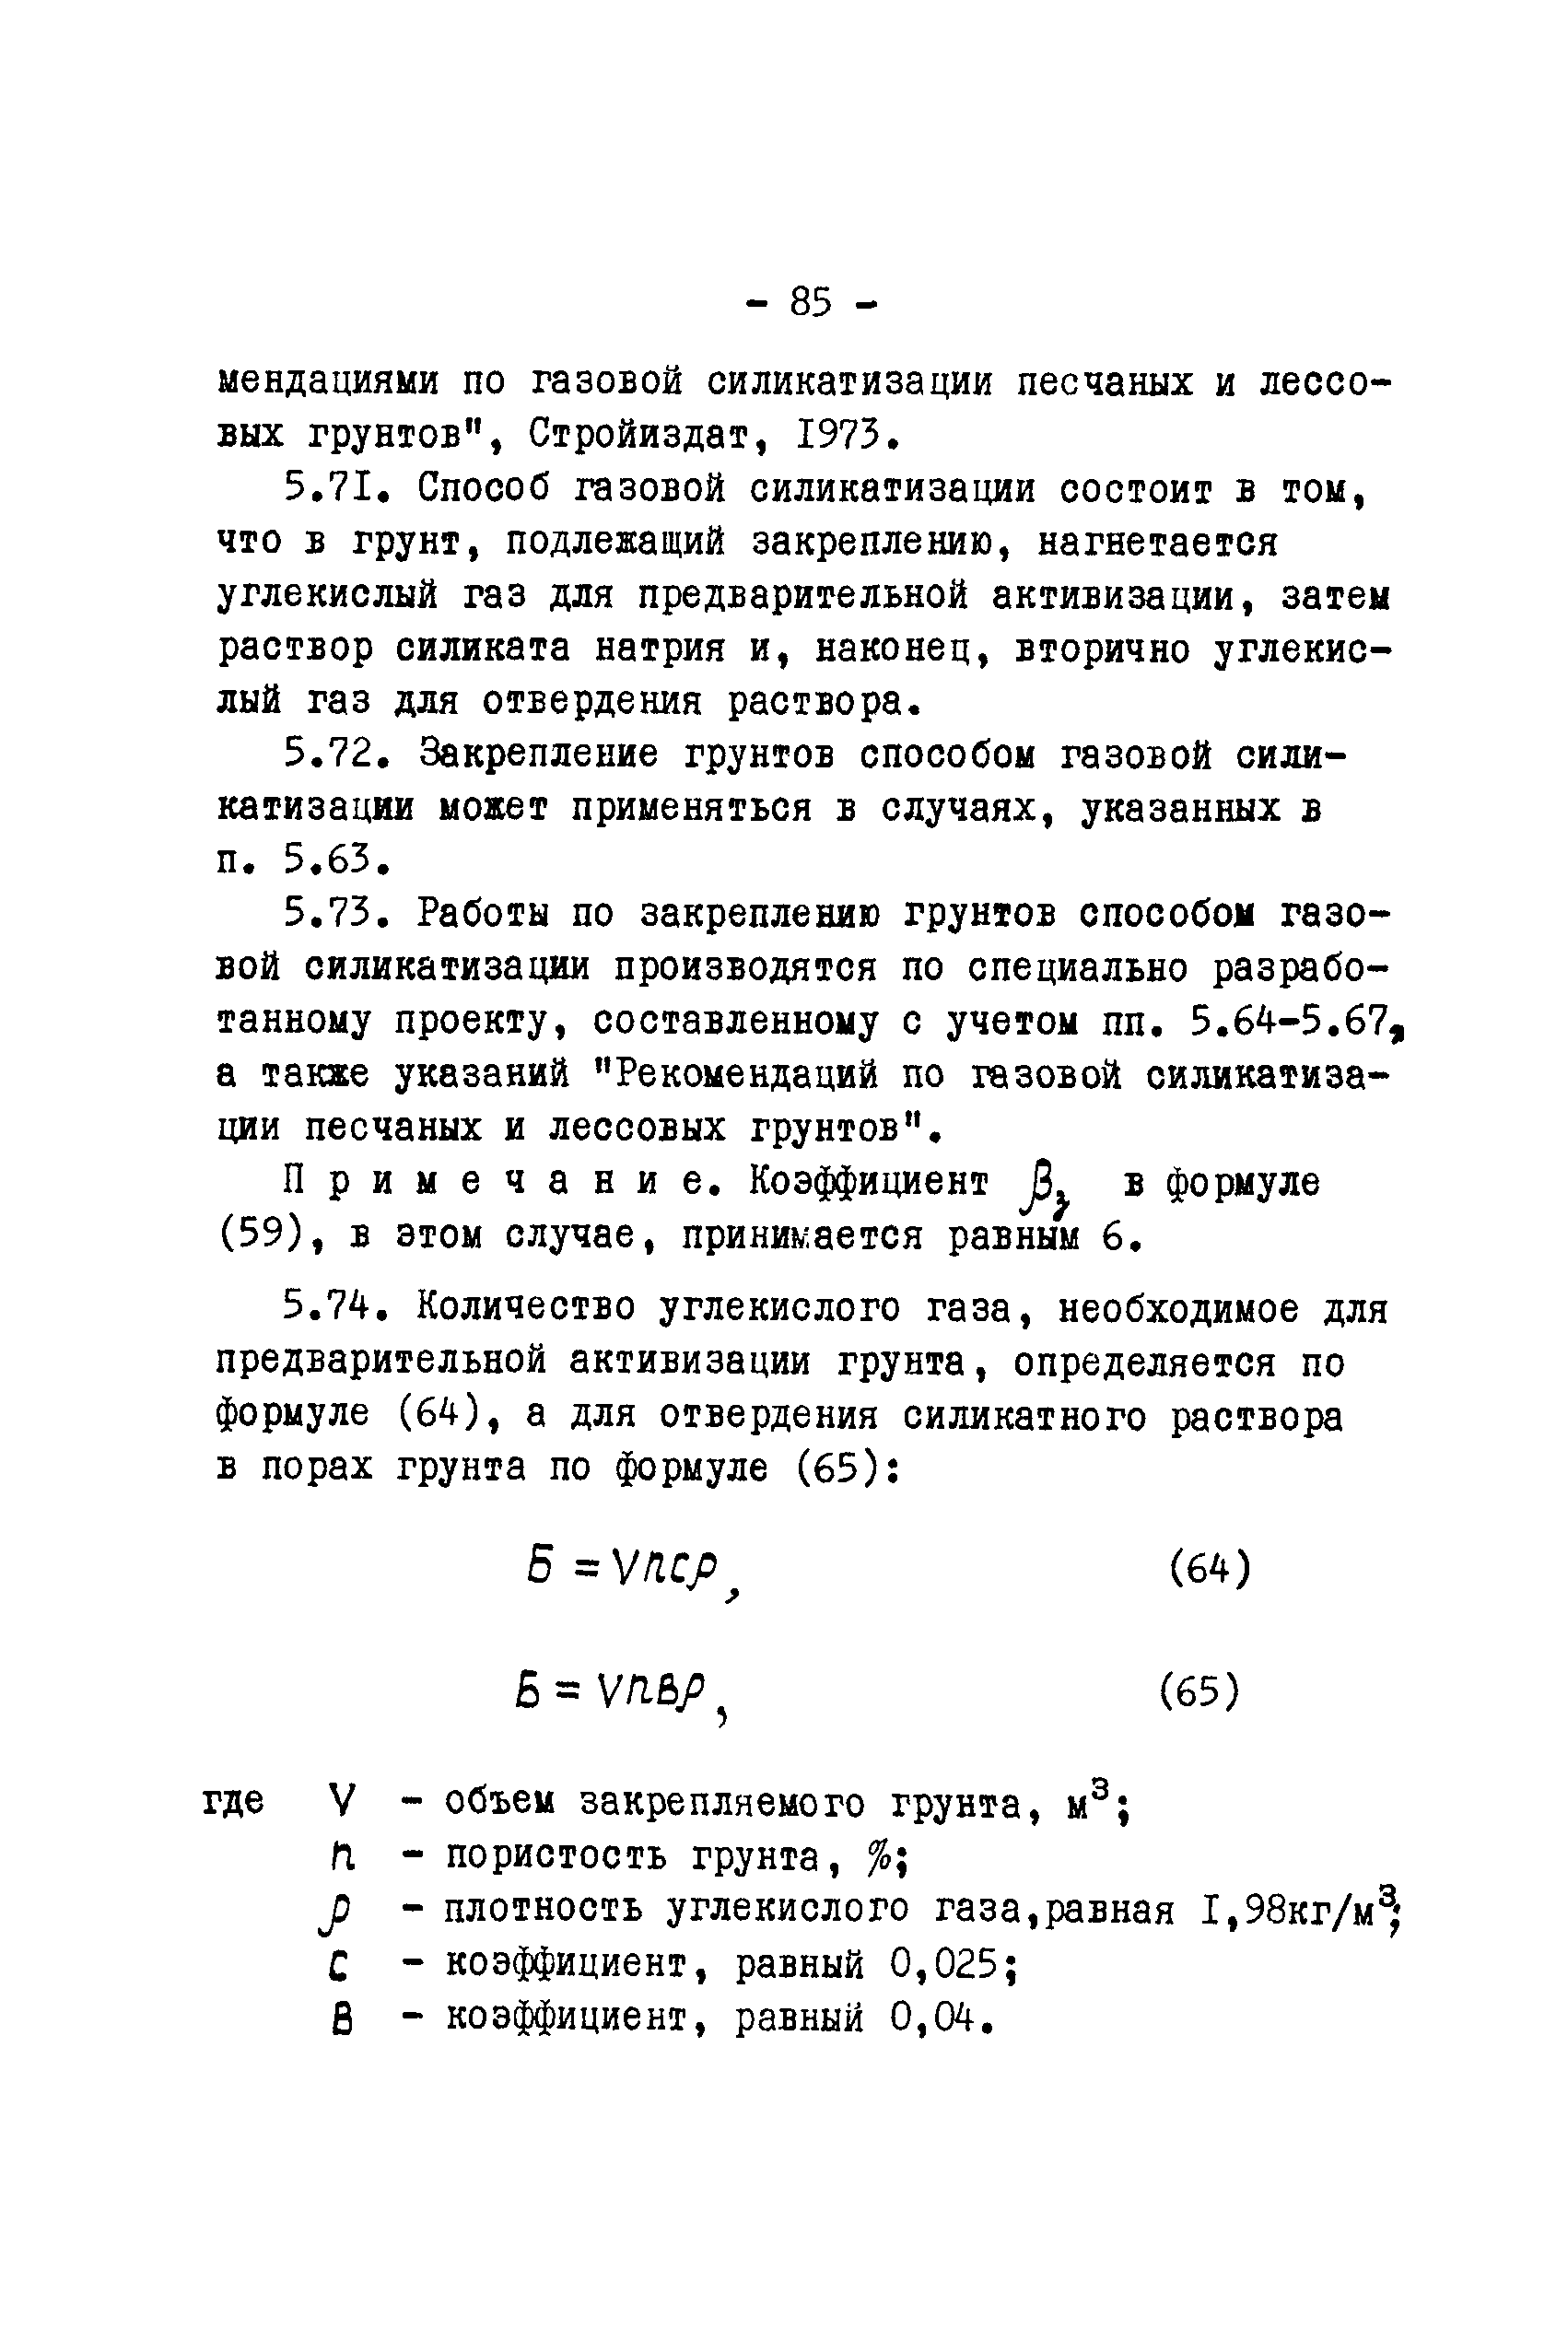 ВСН II-23-75/Минводхоз СССР